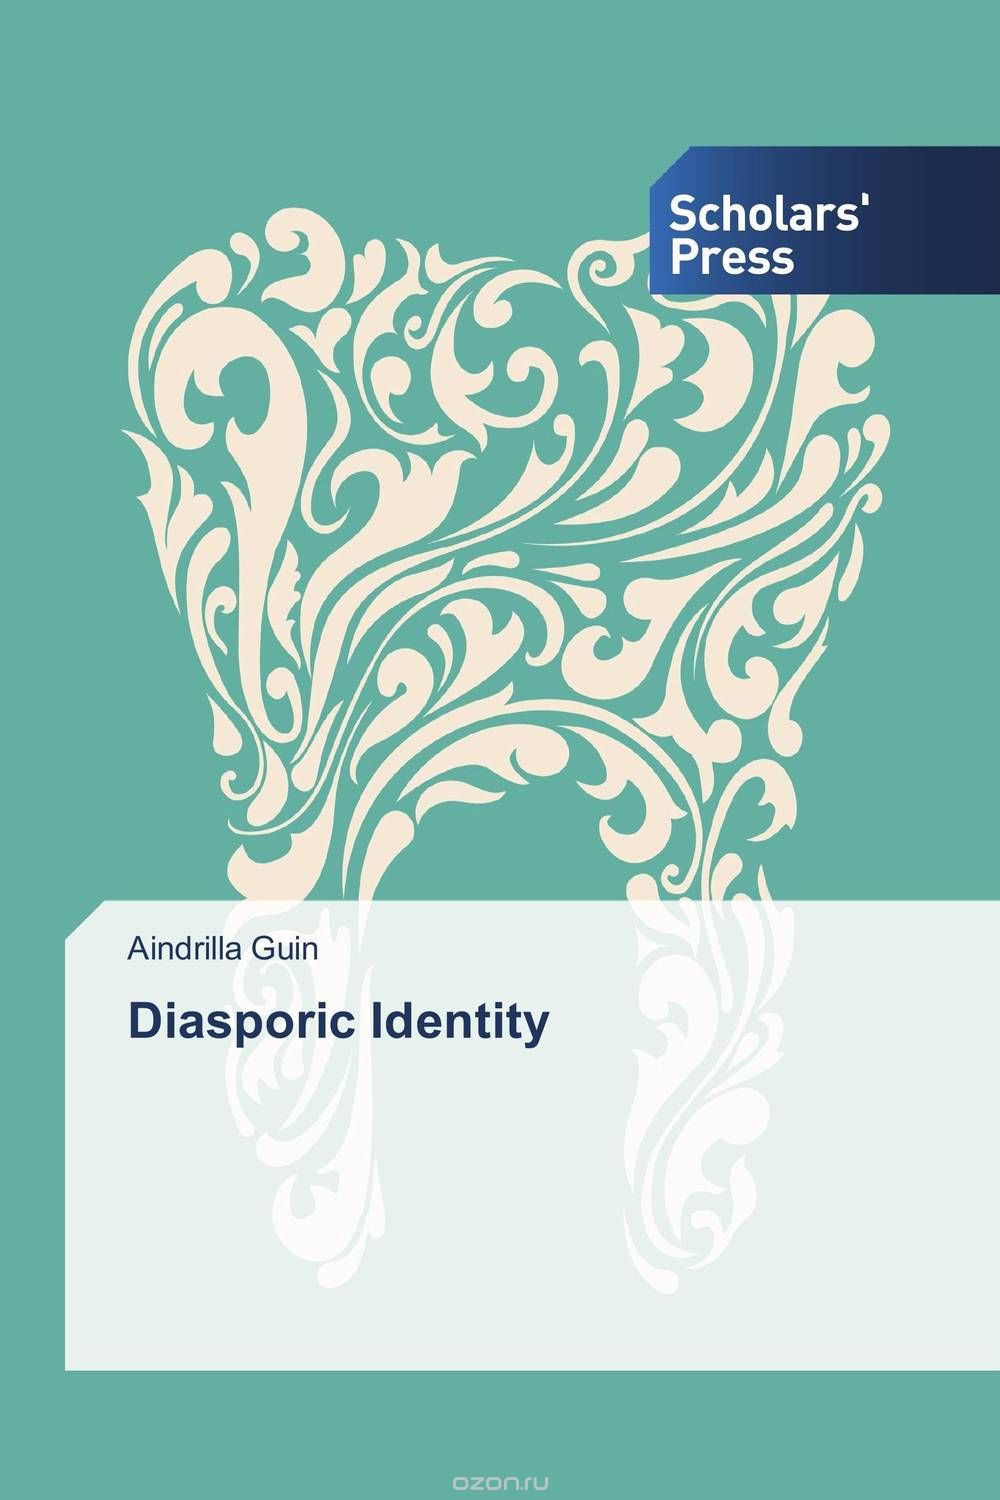 Скачать книгу "Diasporic Identity"